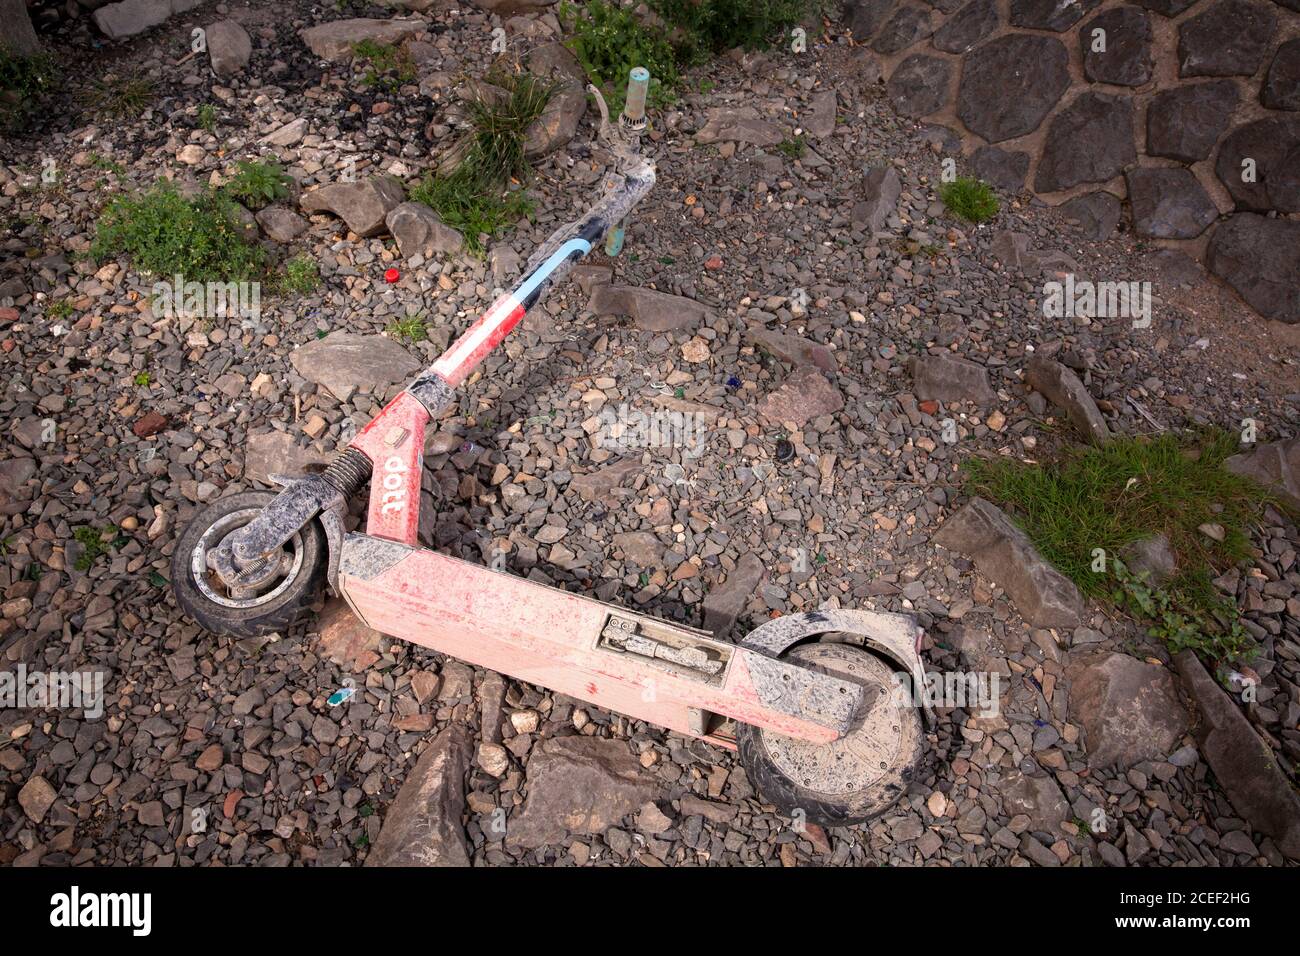 Uno scooter elettrico Dott sporco recuperato dal Reno si trova sulle rive del Reno, Colonia, Germania. Aus dem Rhein geborgener Dott Elektroscooter Foto Stock